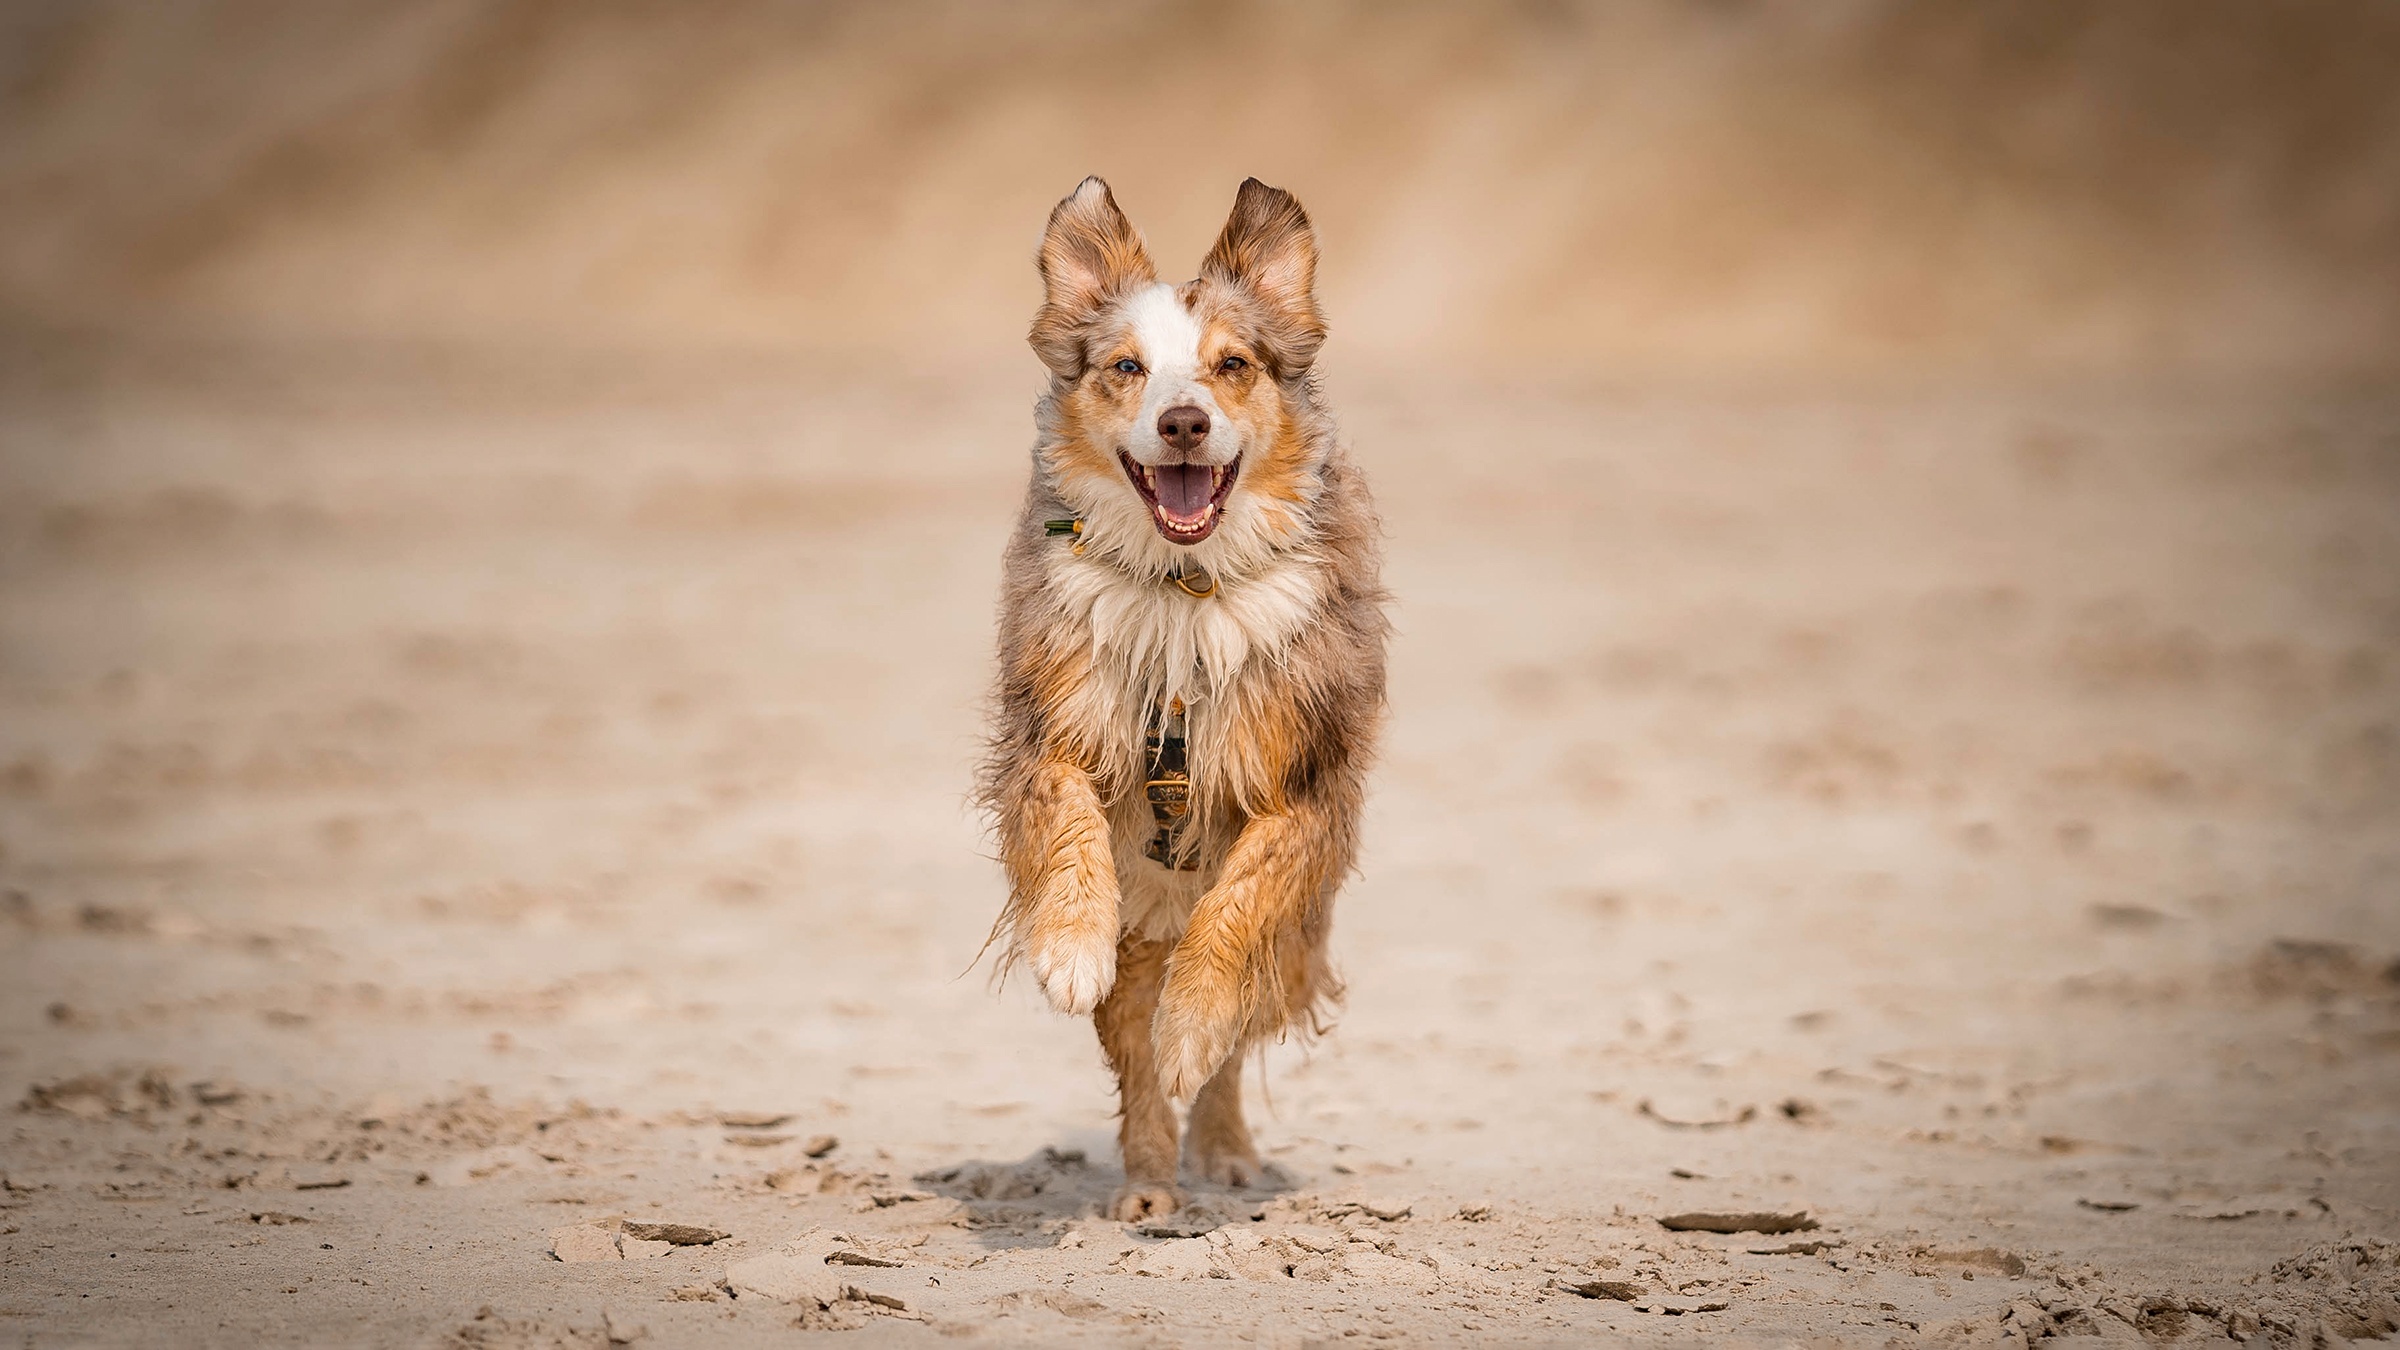 Depressiver Hund: Hund läuft freudig durch Sand